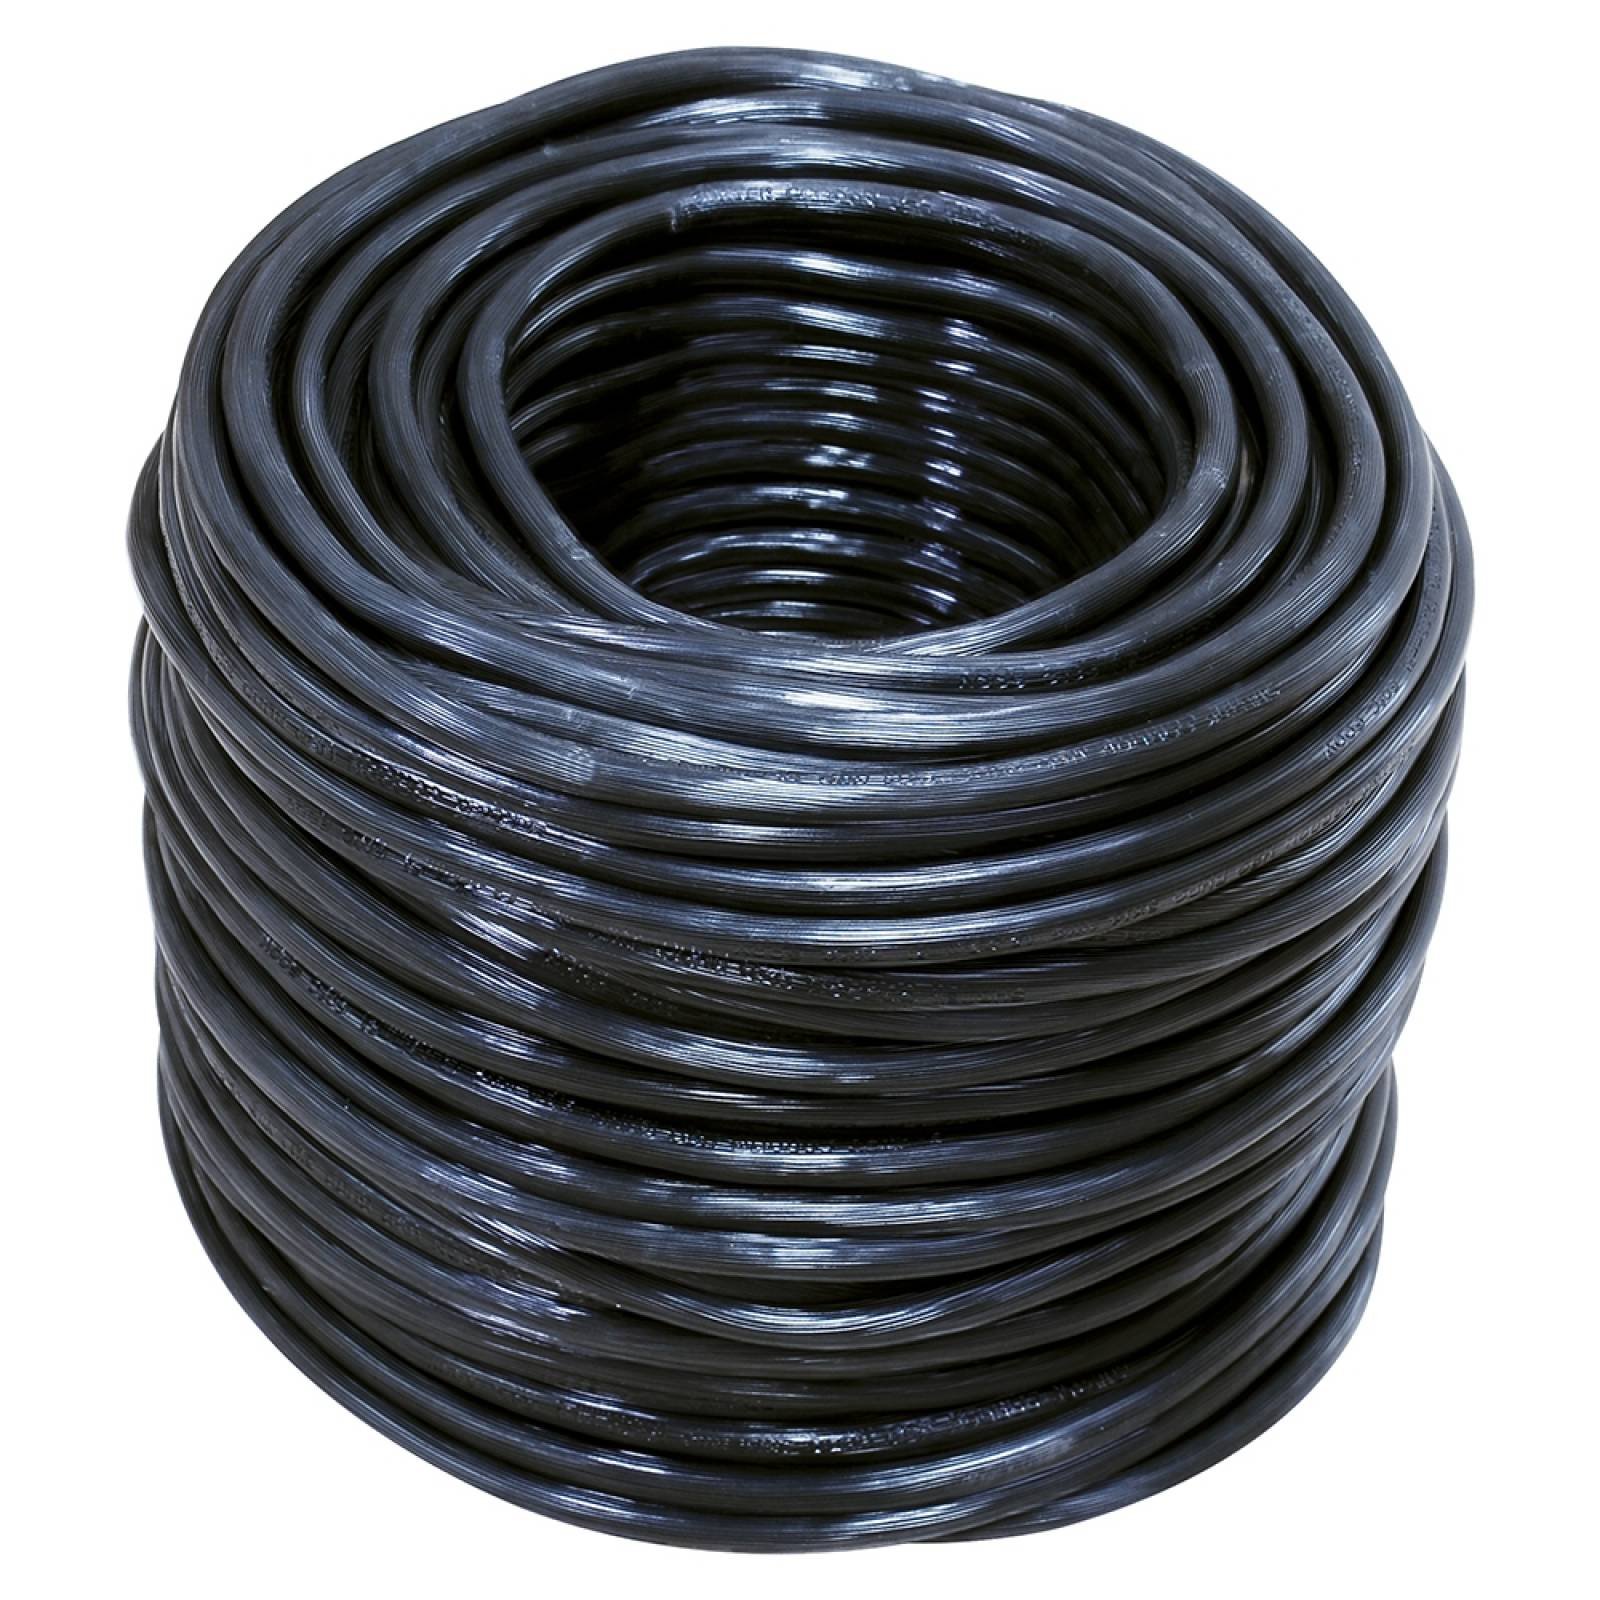 Cable Eléctrico Uso Rudo Cal.2x10 100m Blanco Y Negro 136933 